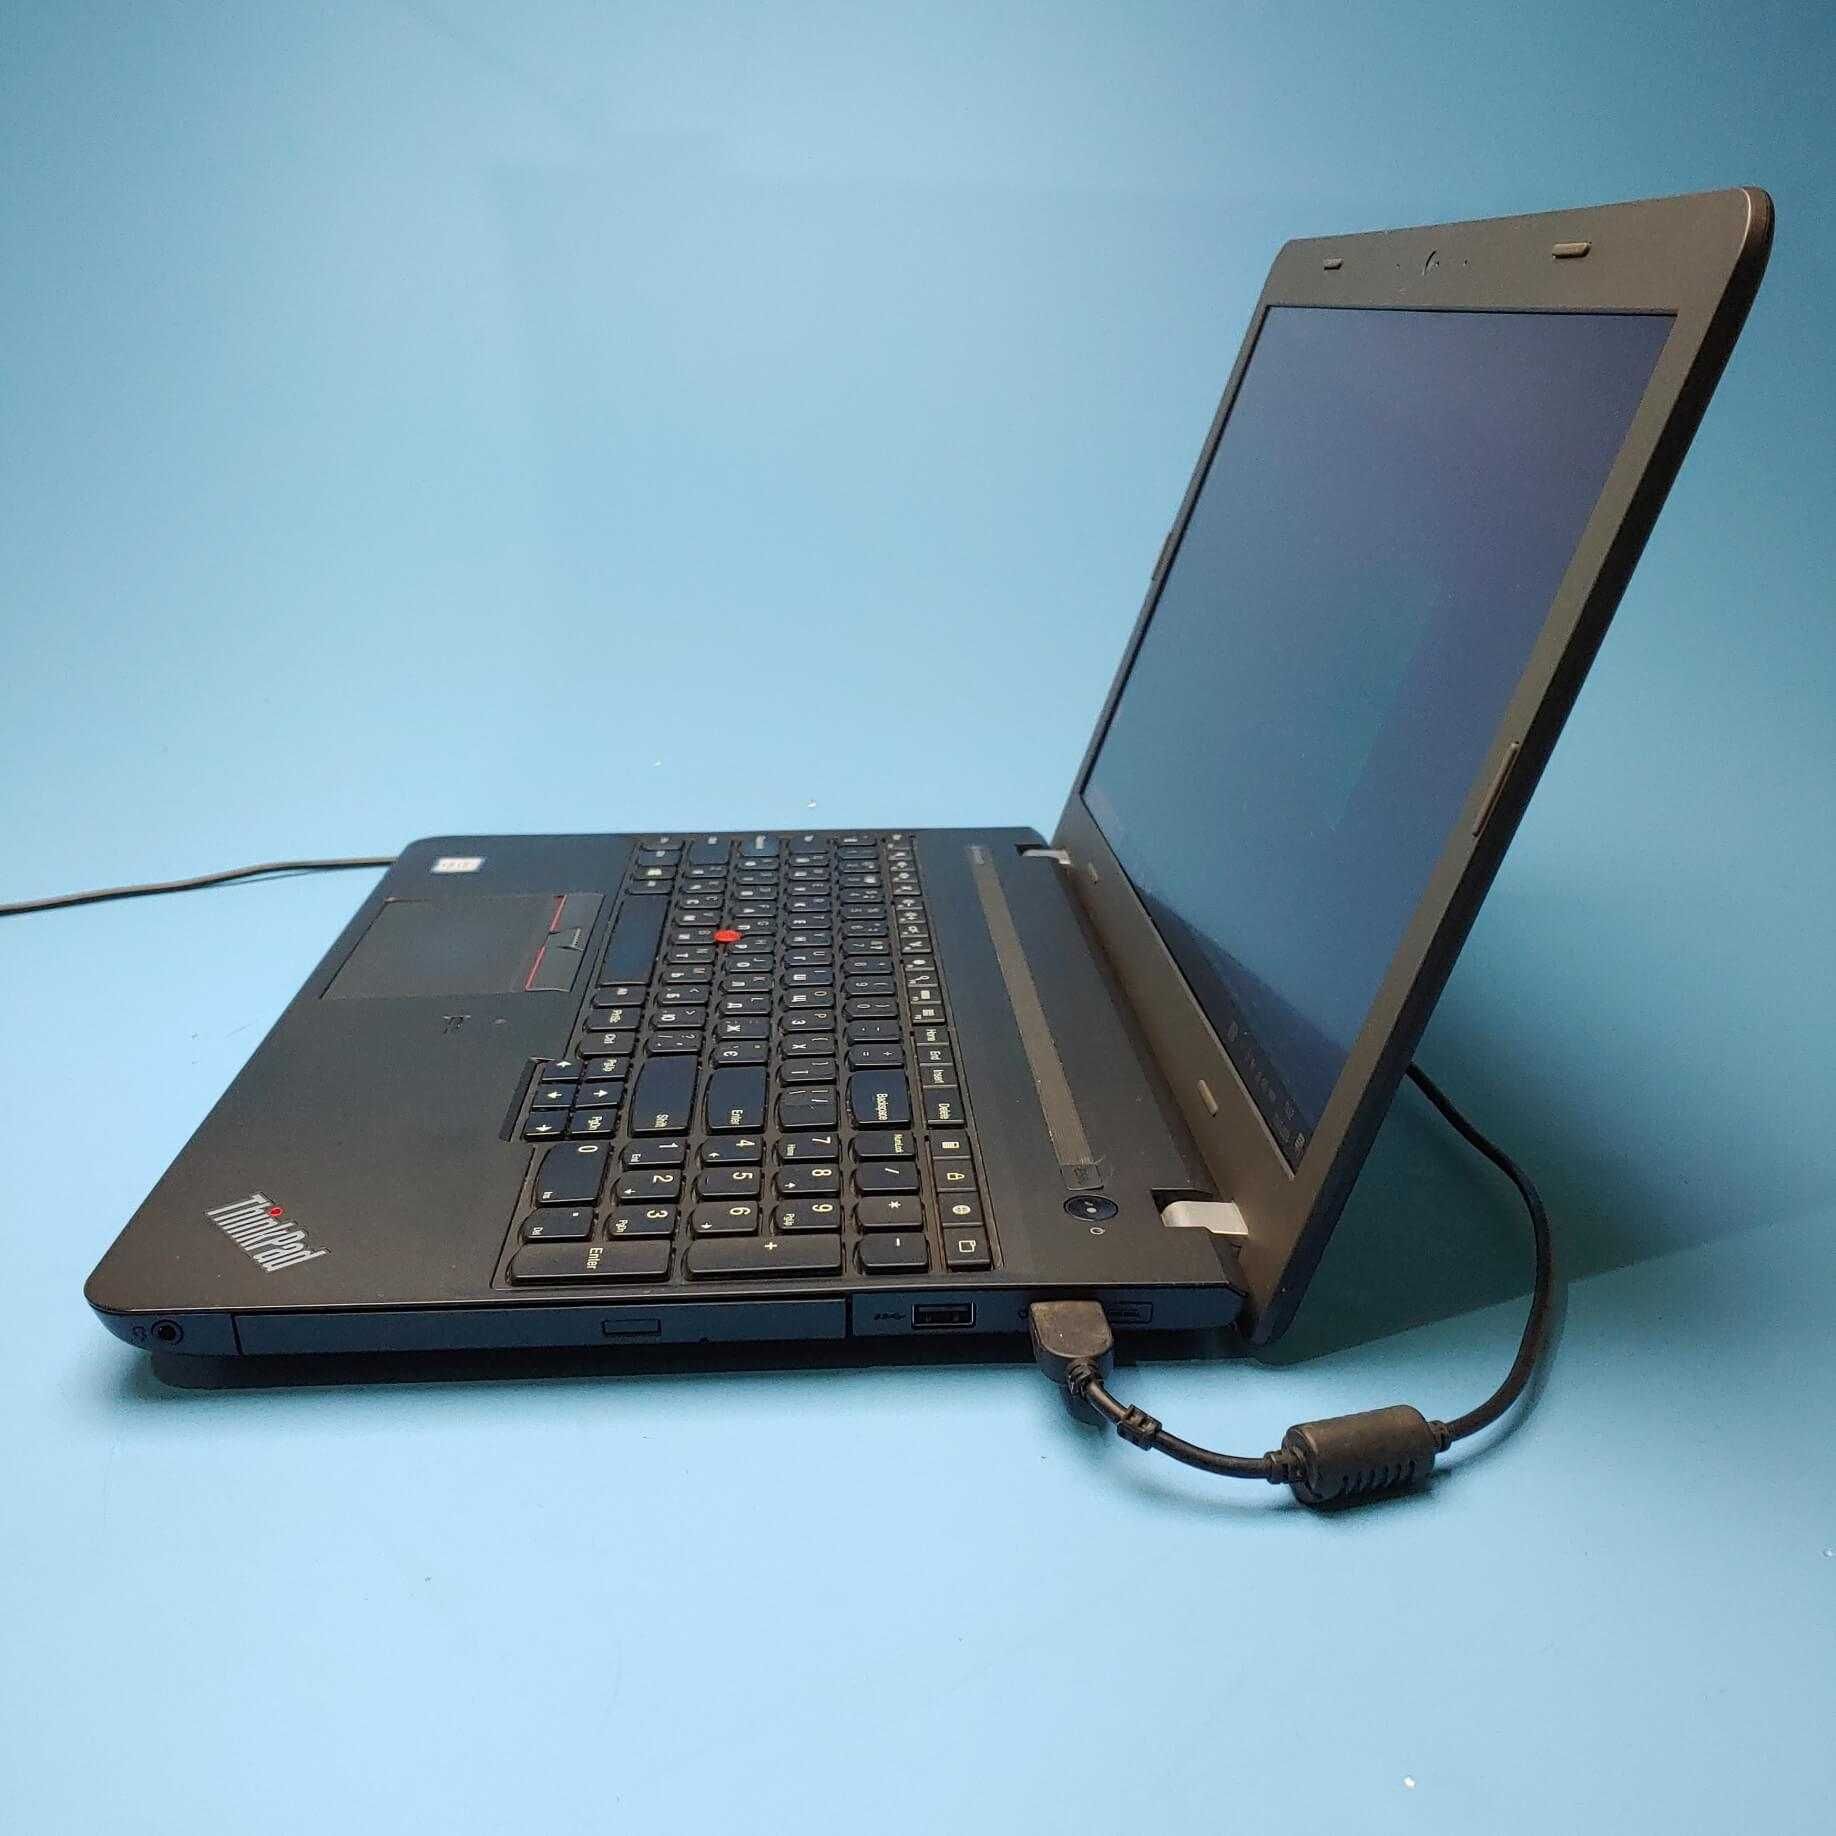 Ноутбук Lenovo ThinkPad E560 (i5-6200U/RAM 8GB DDR3/SSD 500GB)(7154(2)